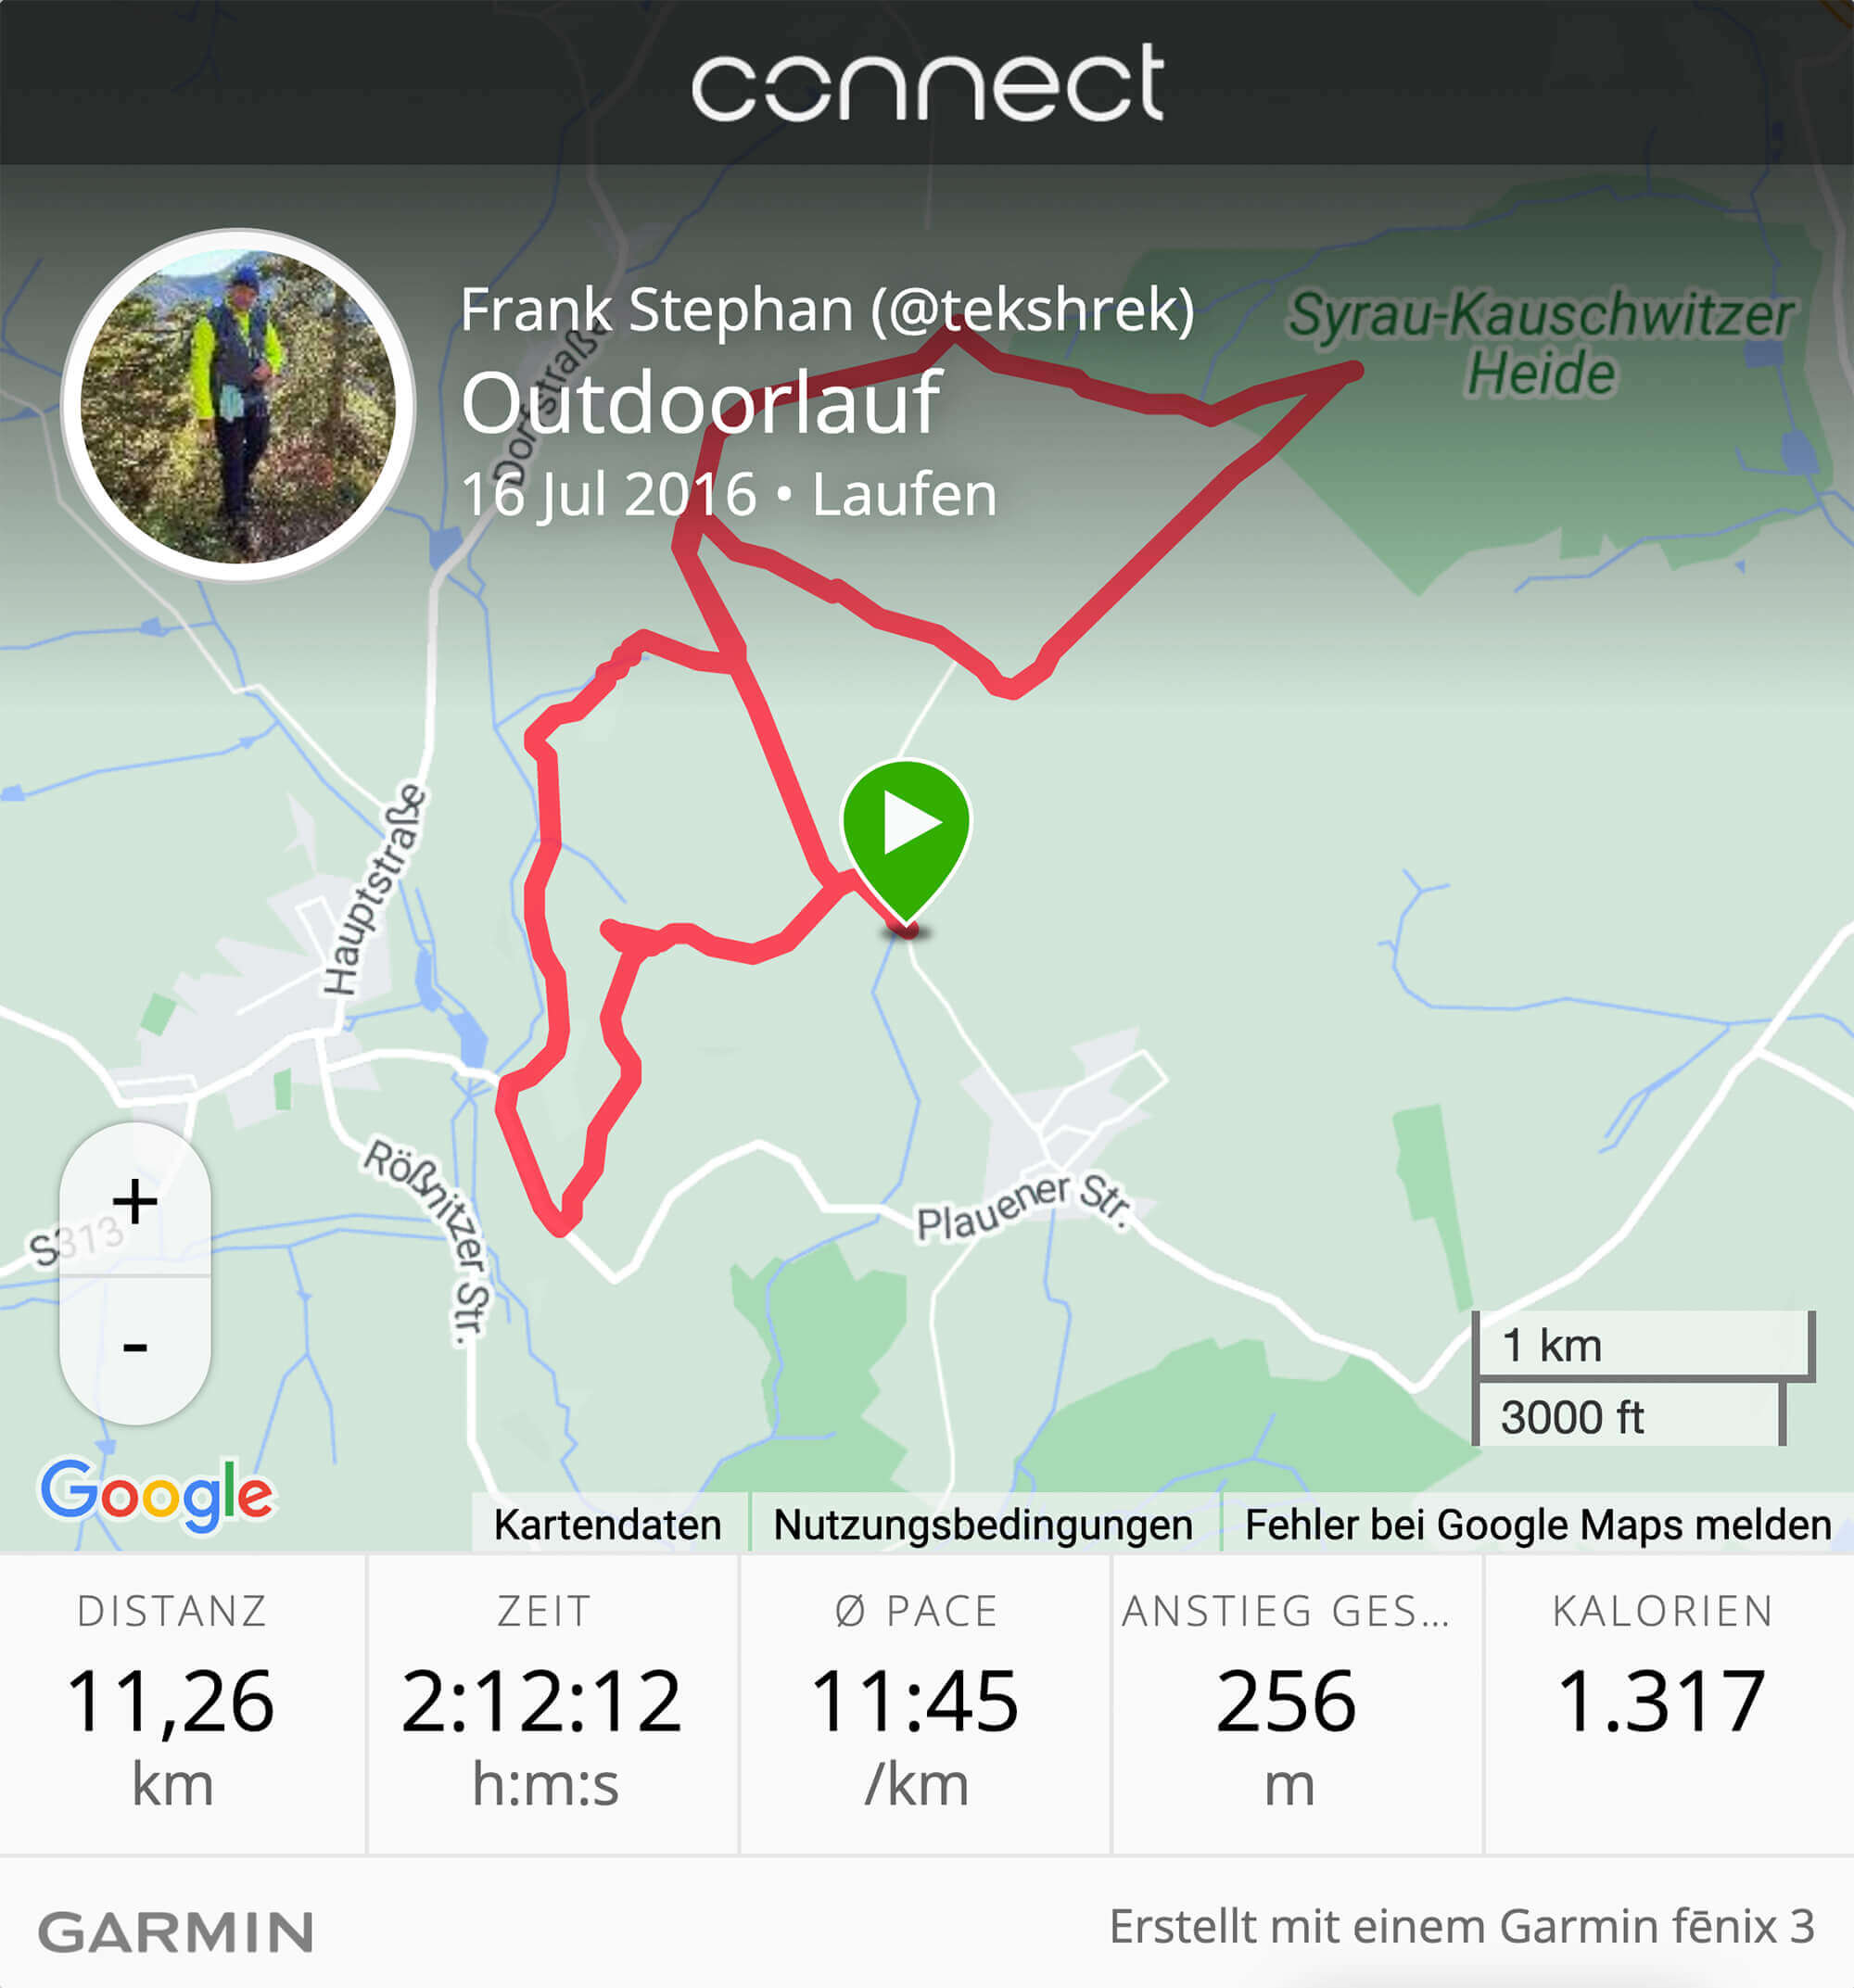 Garmin fēnix 3 (m)ein bester Freund und meine ersten 10 km beim Nordic Walking  im Schneckengrüner Wald bei Syrau